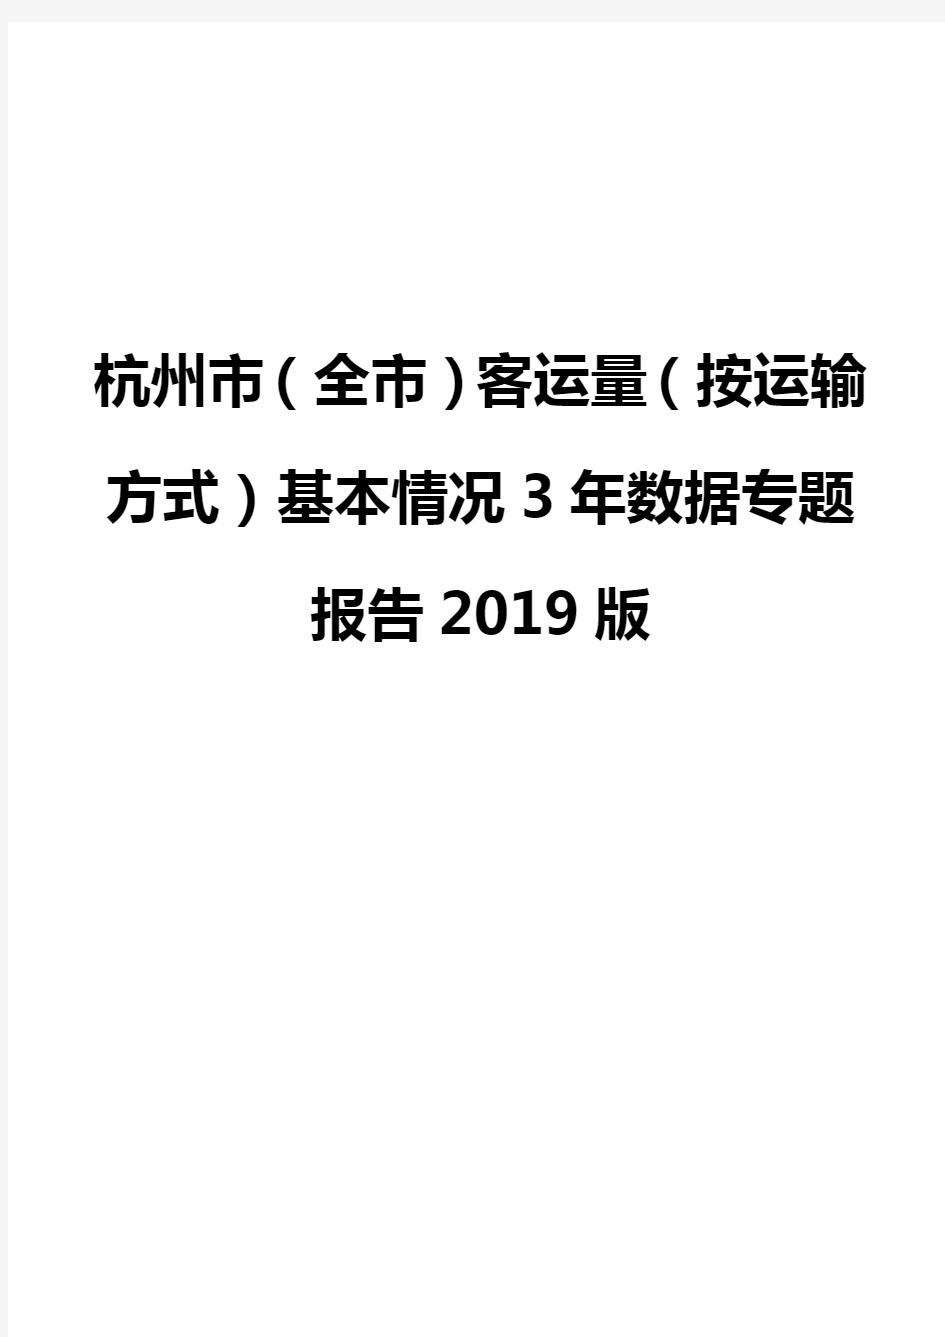 杭州市(全市)客运量(按运输方式)基本情况3年数据专题报告2019版